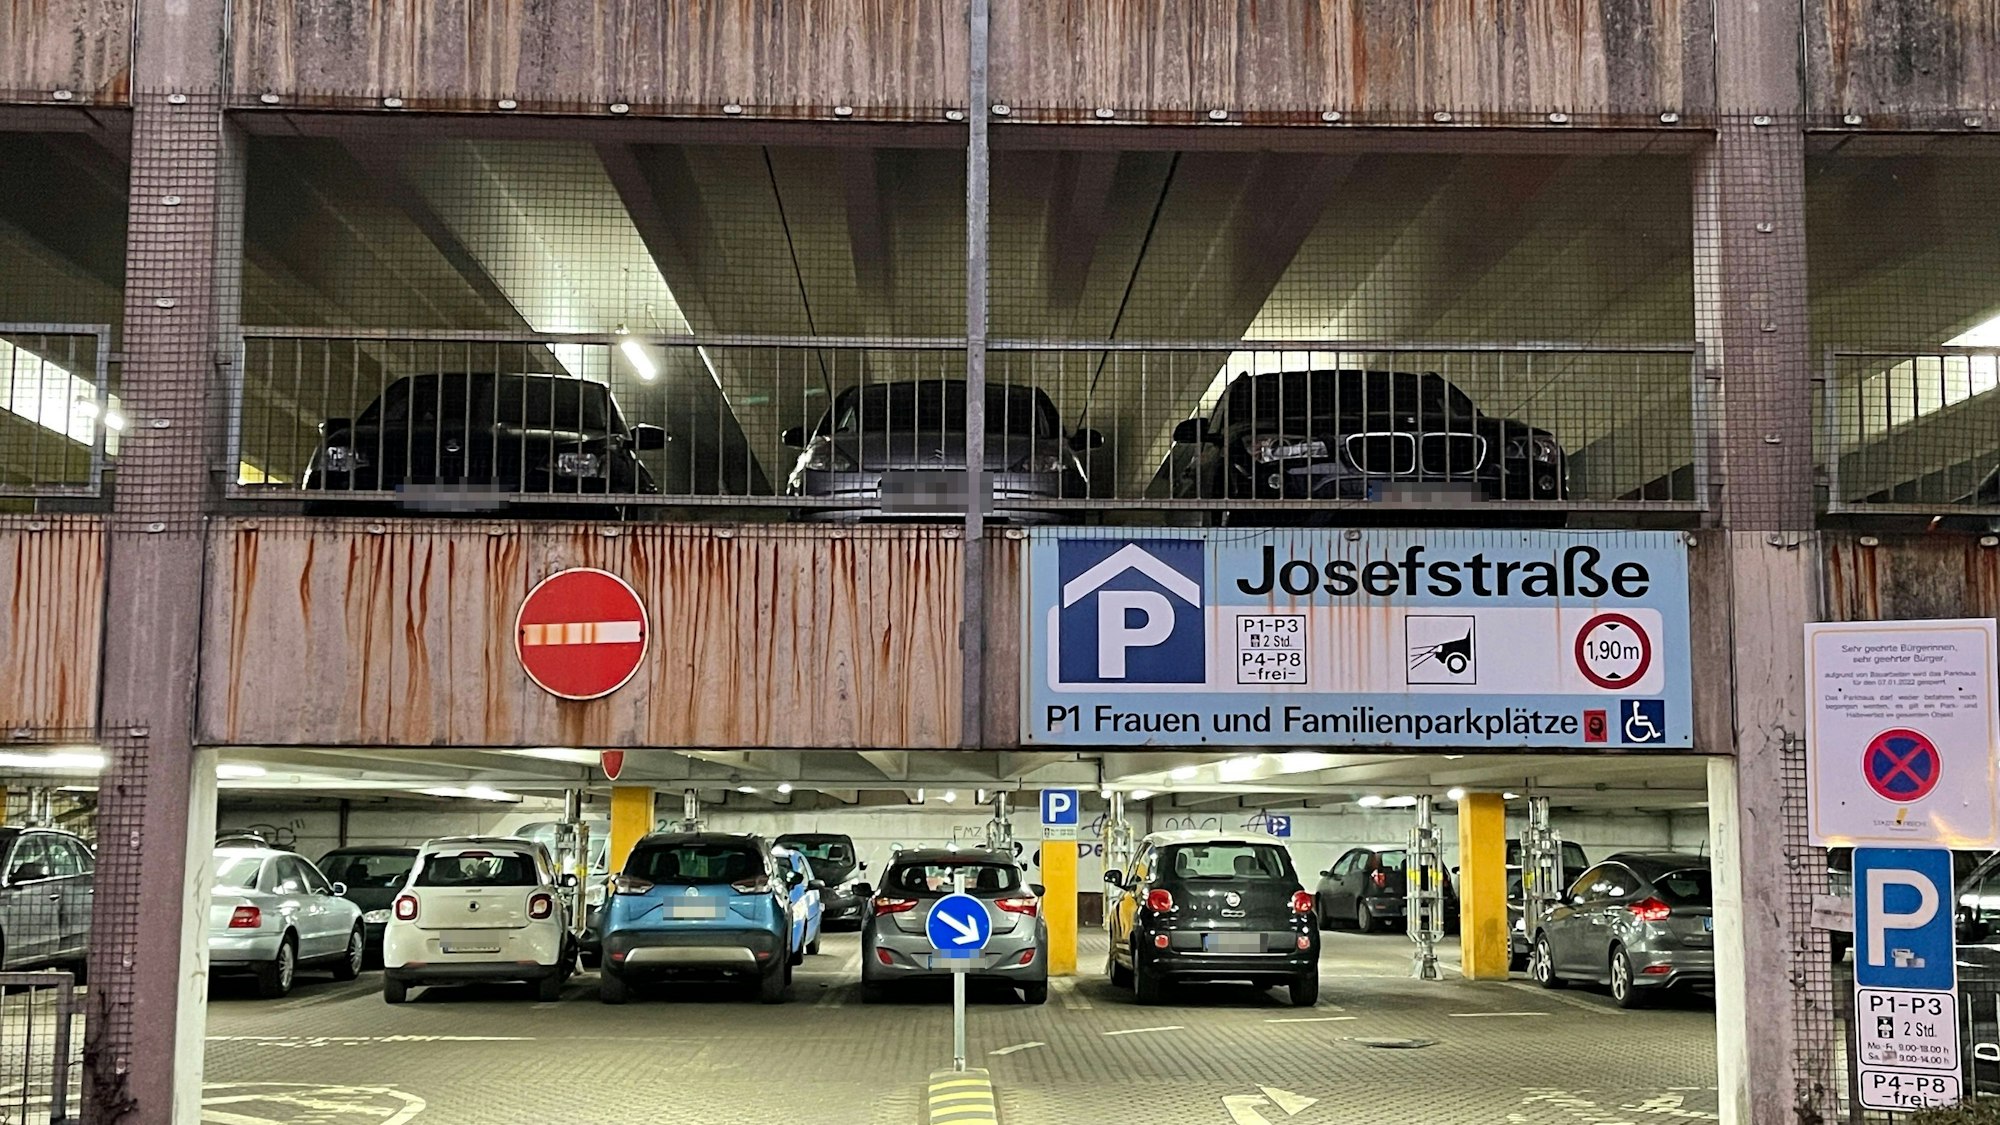 Das Foto zeigt das Parkhaus in Frechen an der Josefstraße. Die Zukunft des maroden Parkhauses war einer der Streitpunkte, warum die Grünen nun das Bündnis mit der CDU aufgekündigt haben.